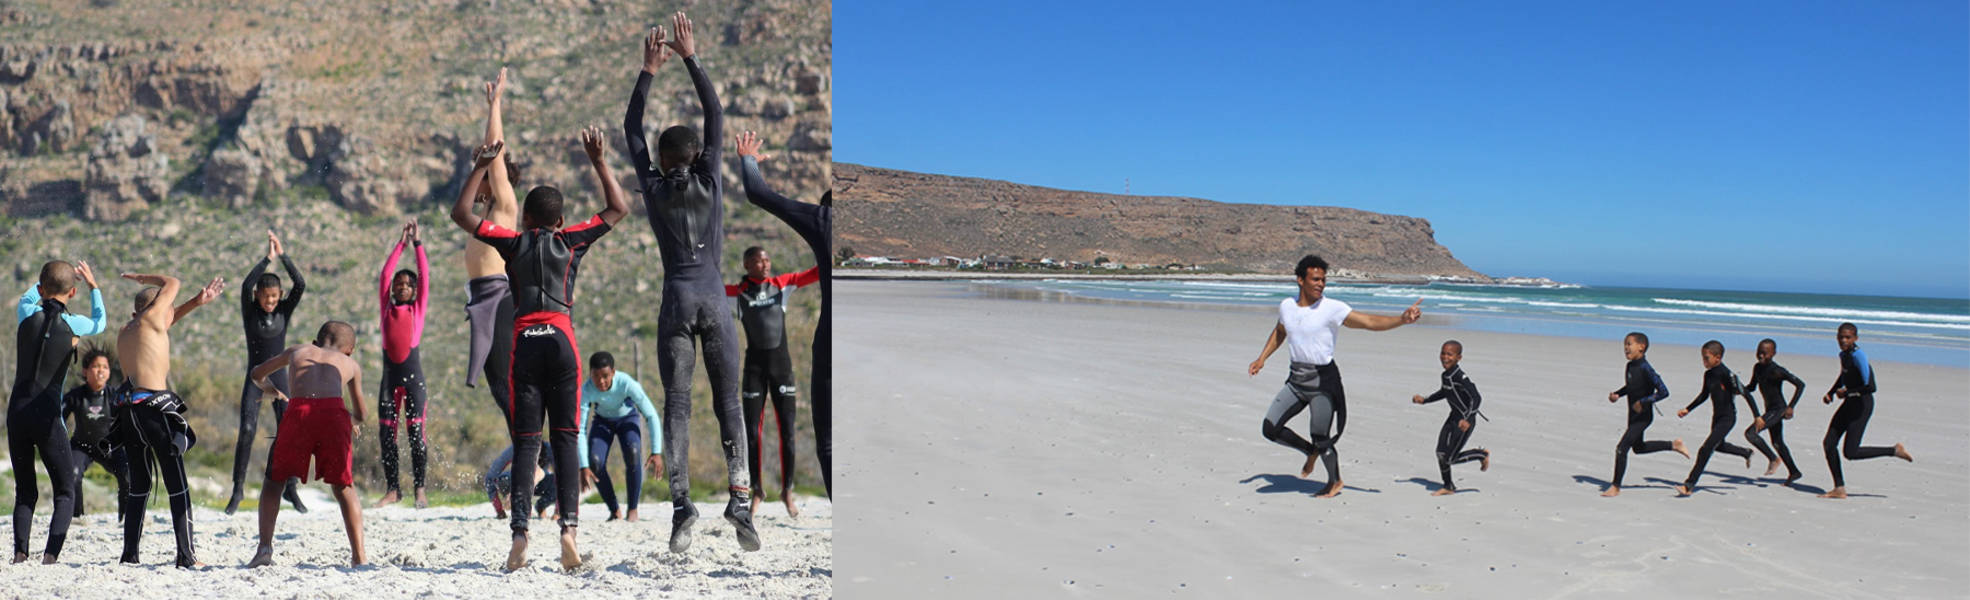 Surf Projekt in Südafrika